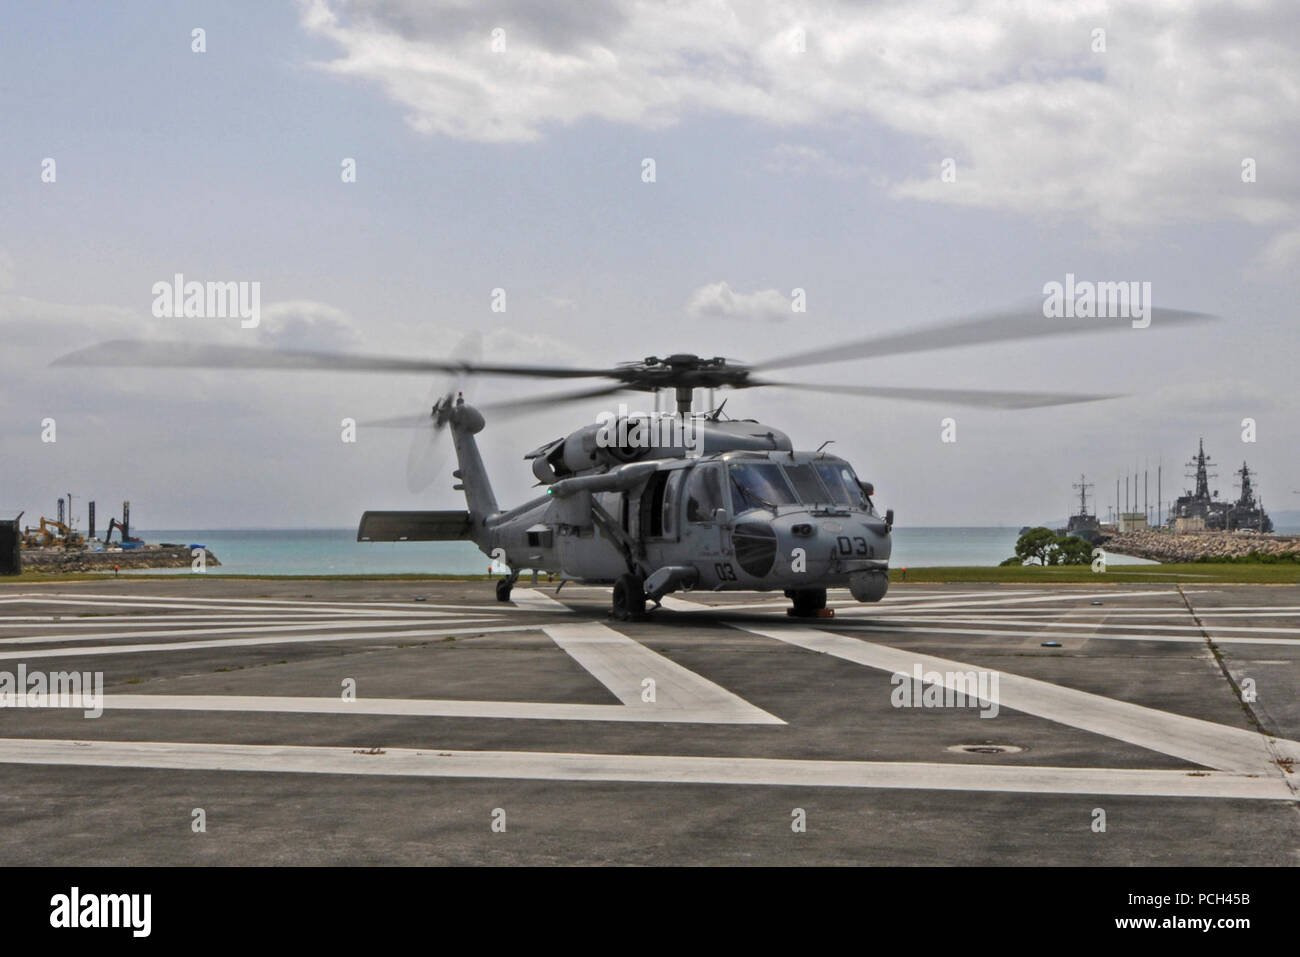 Un U.S. Navy MH-60S Seahawk elicottero, assegnato al mare in elicottero Combat Squadron (HSC) 25, si prepara a prendere il via da una piazzola di atterraggio in spiaggia bianca Naval Facility, Okinawa, in Giappone, 14 marzo, 2014. HSC 25 è stato avviato con la distribuita Amphibious Assault nave USS Bonhomme Richard (LHD 6) e stava conducendo forza congiunta le operazioni negli Stati Uniti 7 Flotta Area di responsabilità. Foto Stock